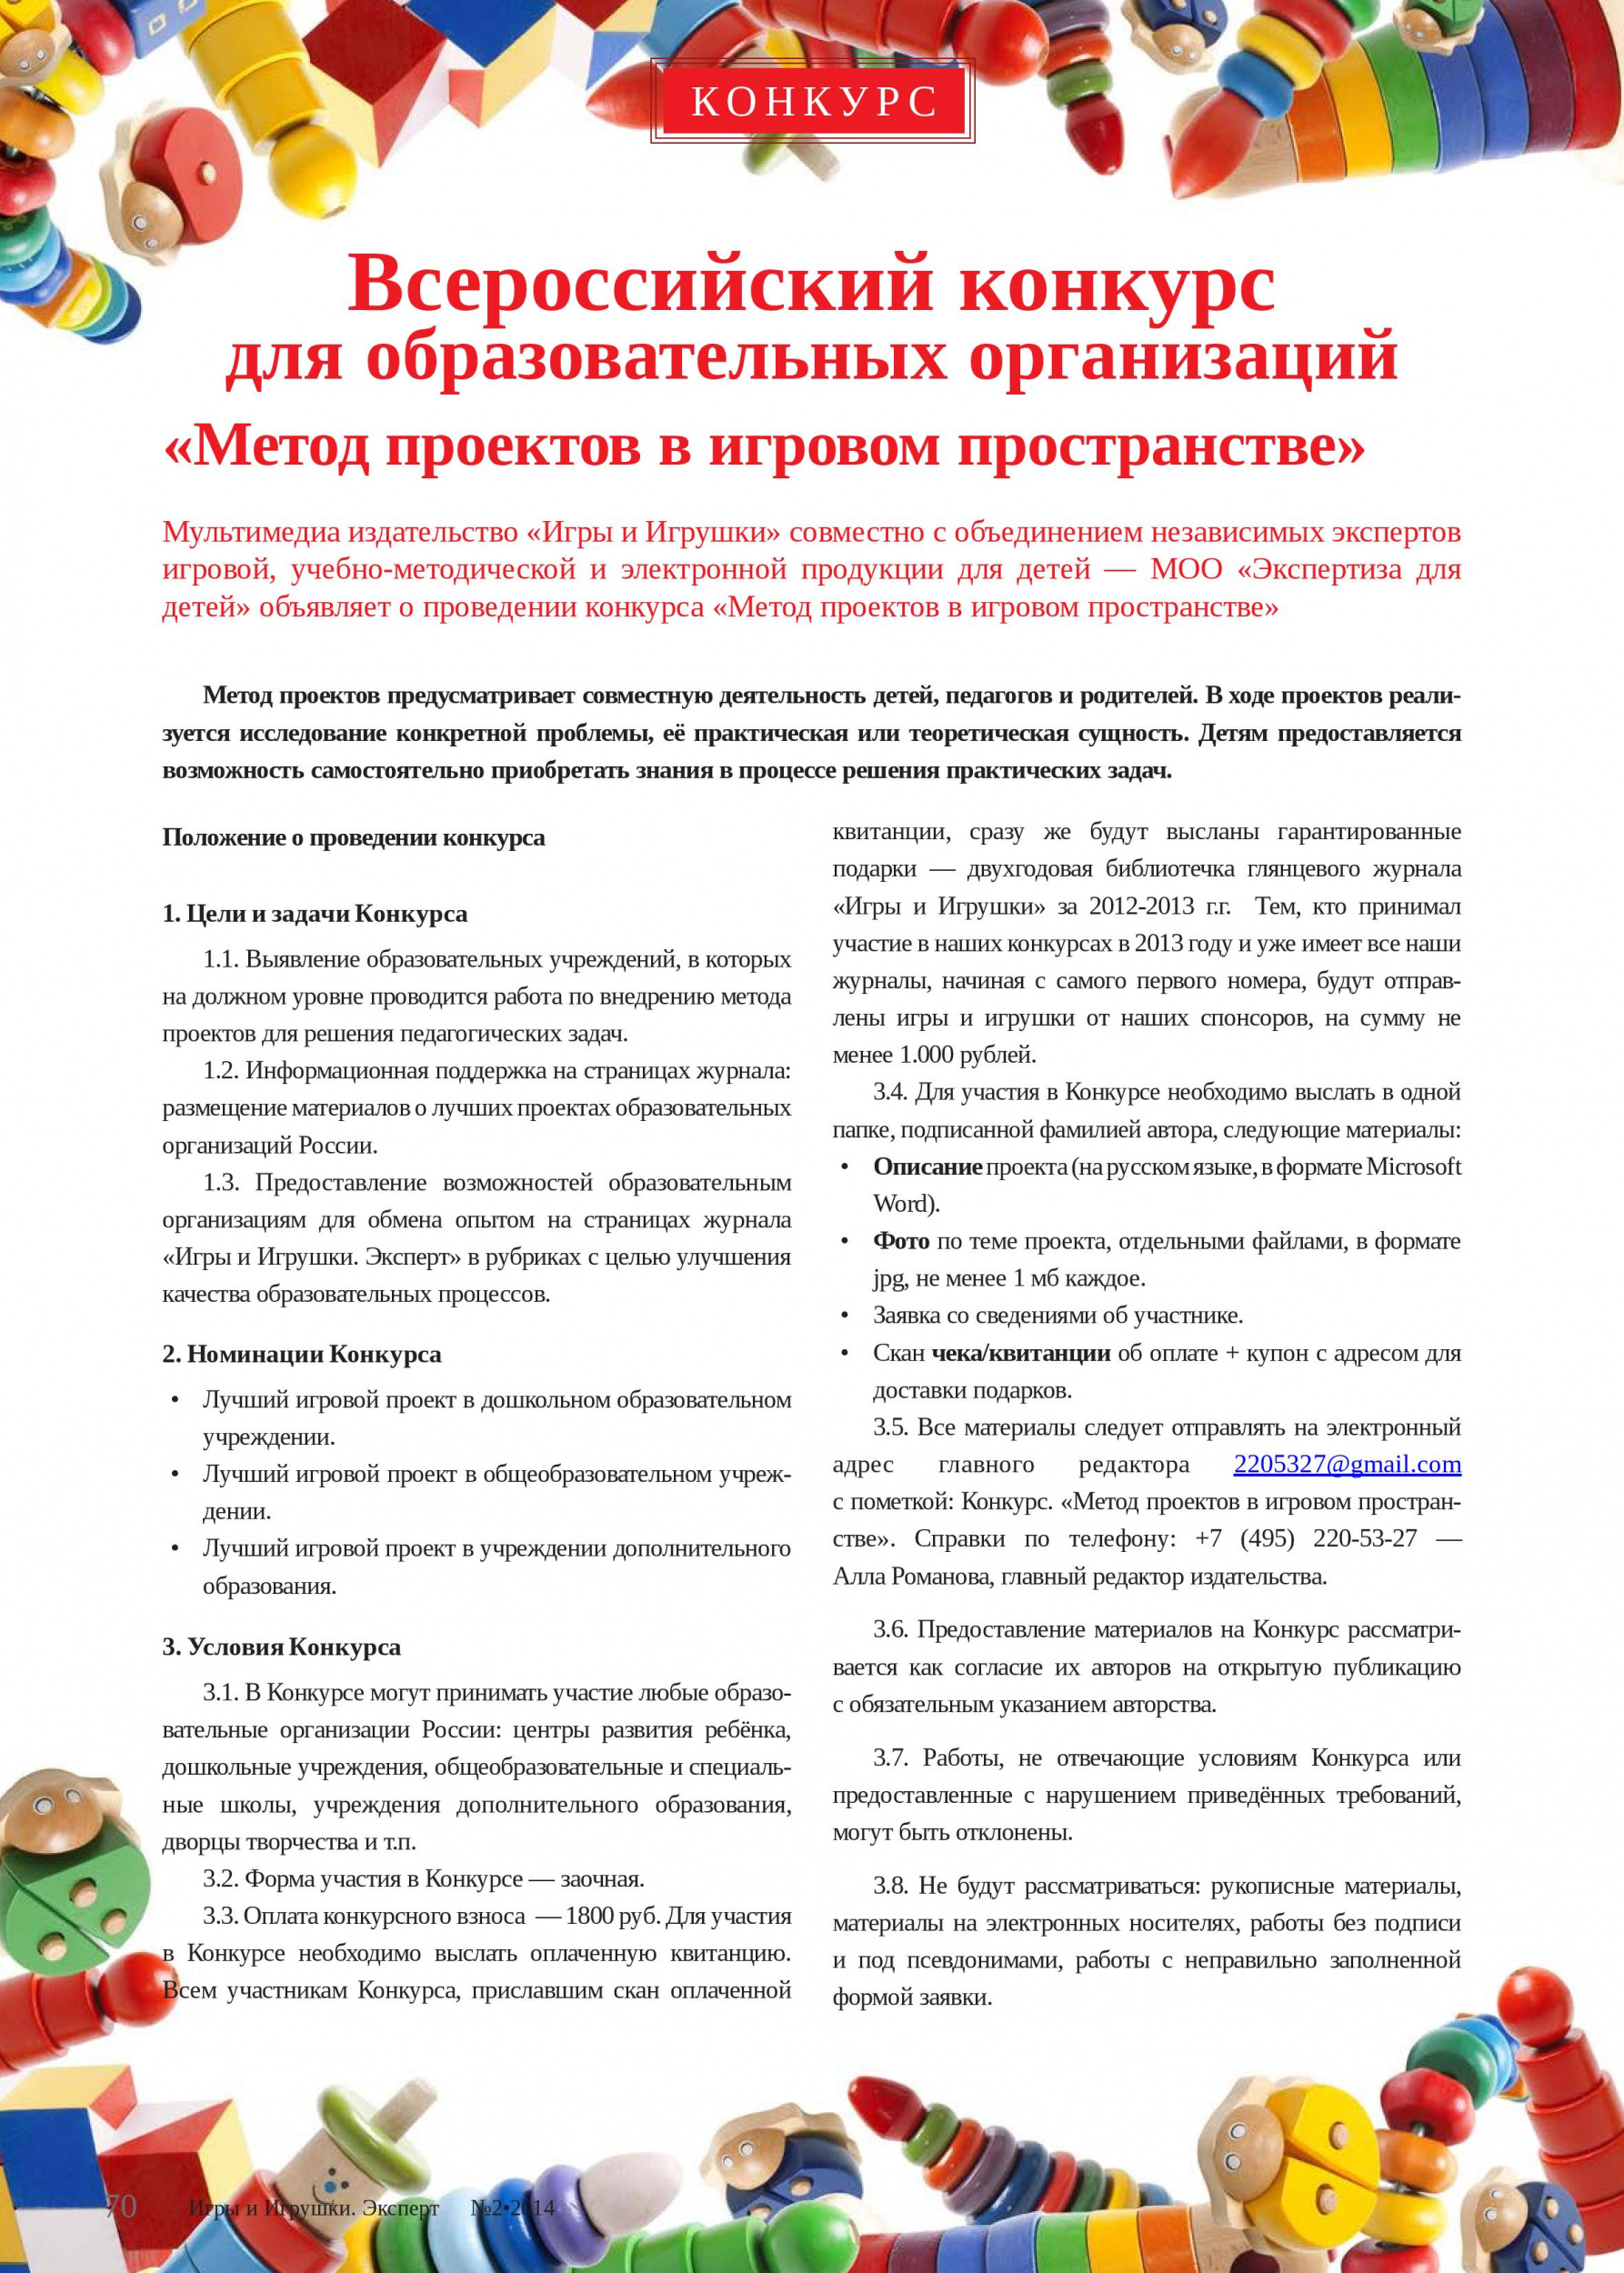 Всероссийский конкурс для образовательных организаций «Метод проектов в игровом пространстве»  